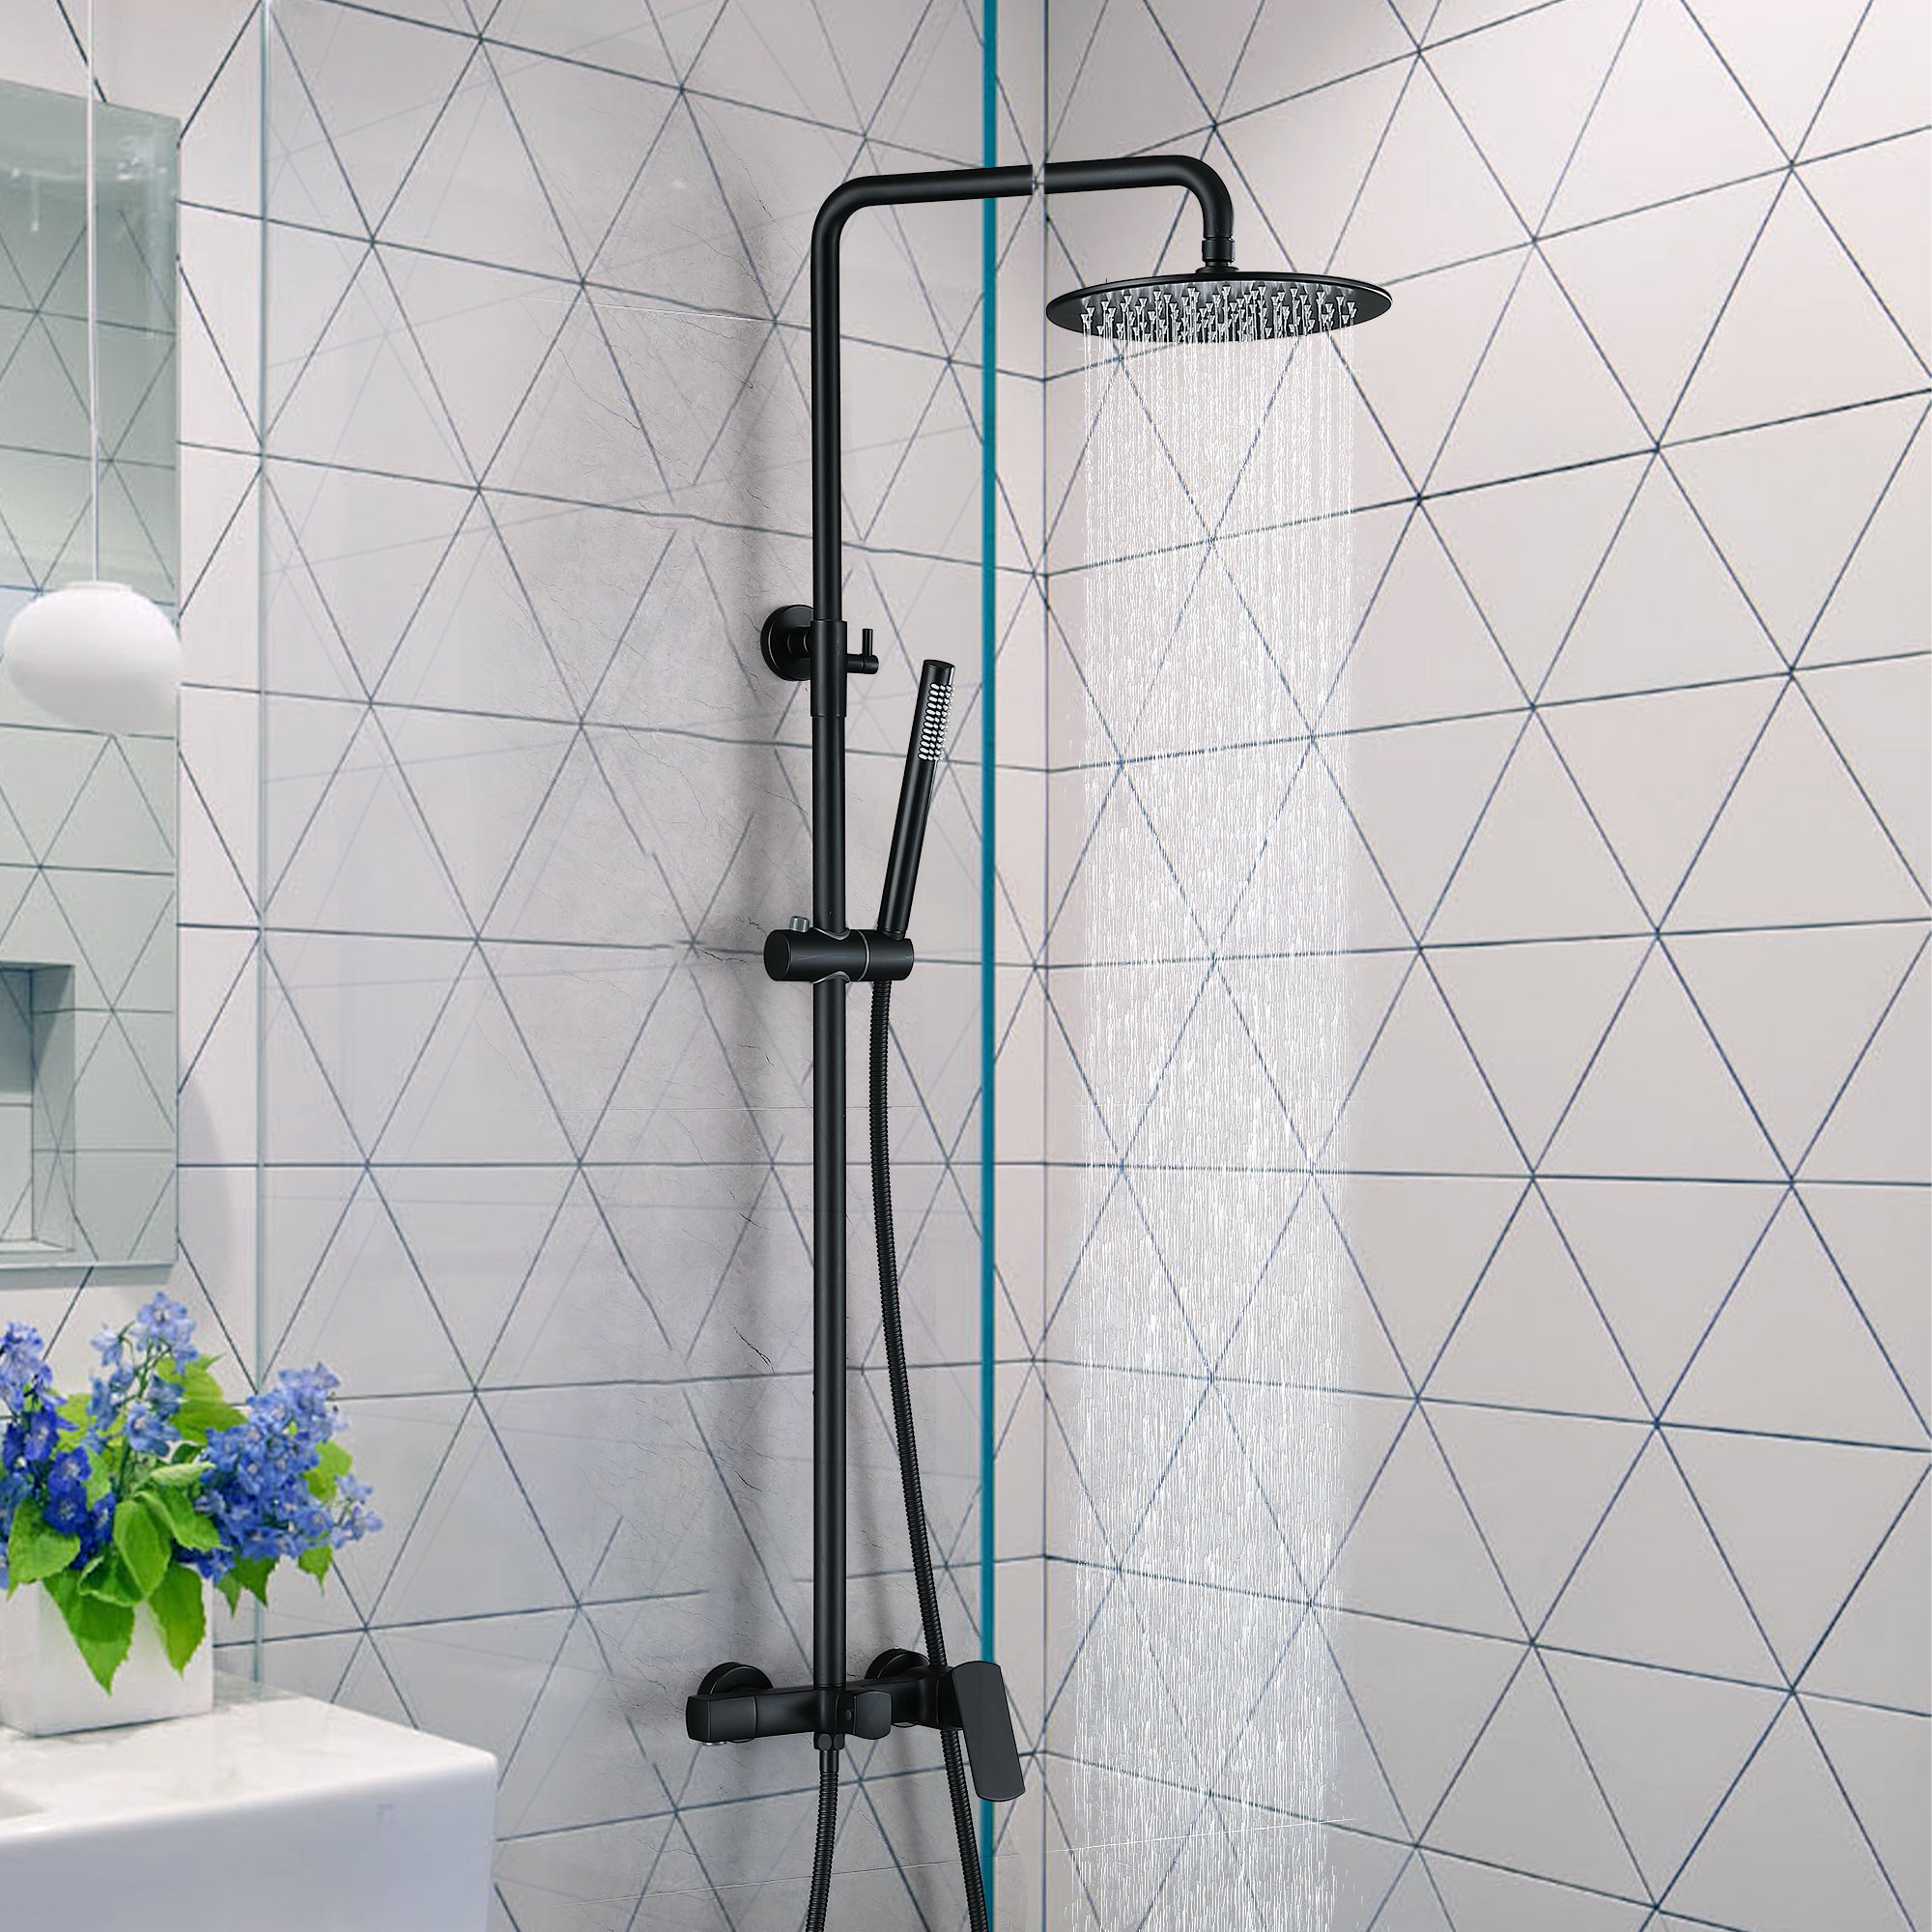 Product giant - Ensemble de douche - Ensemble de douche avec robinet de  bain 